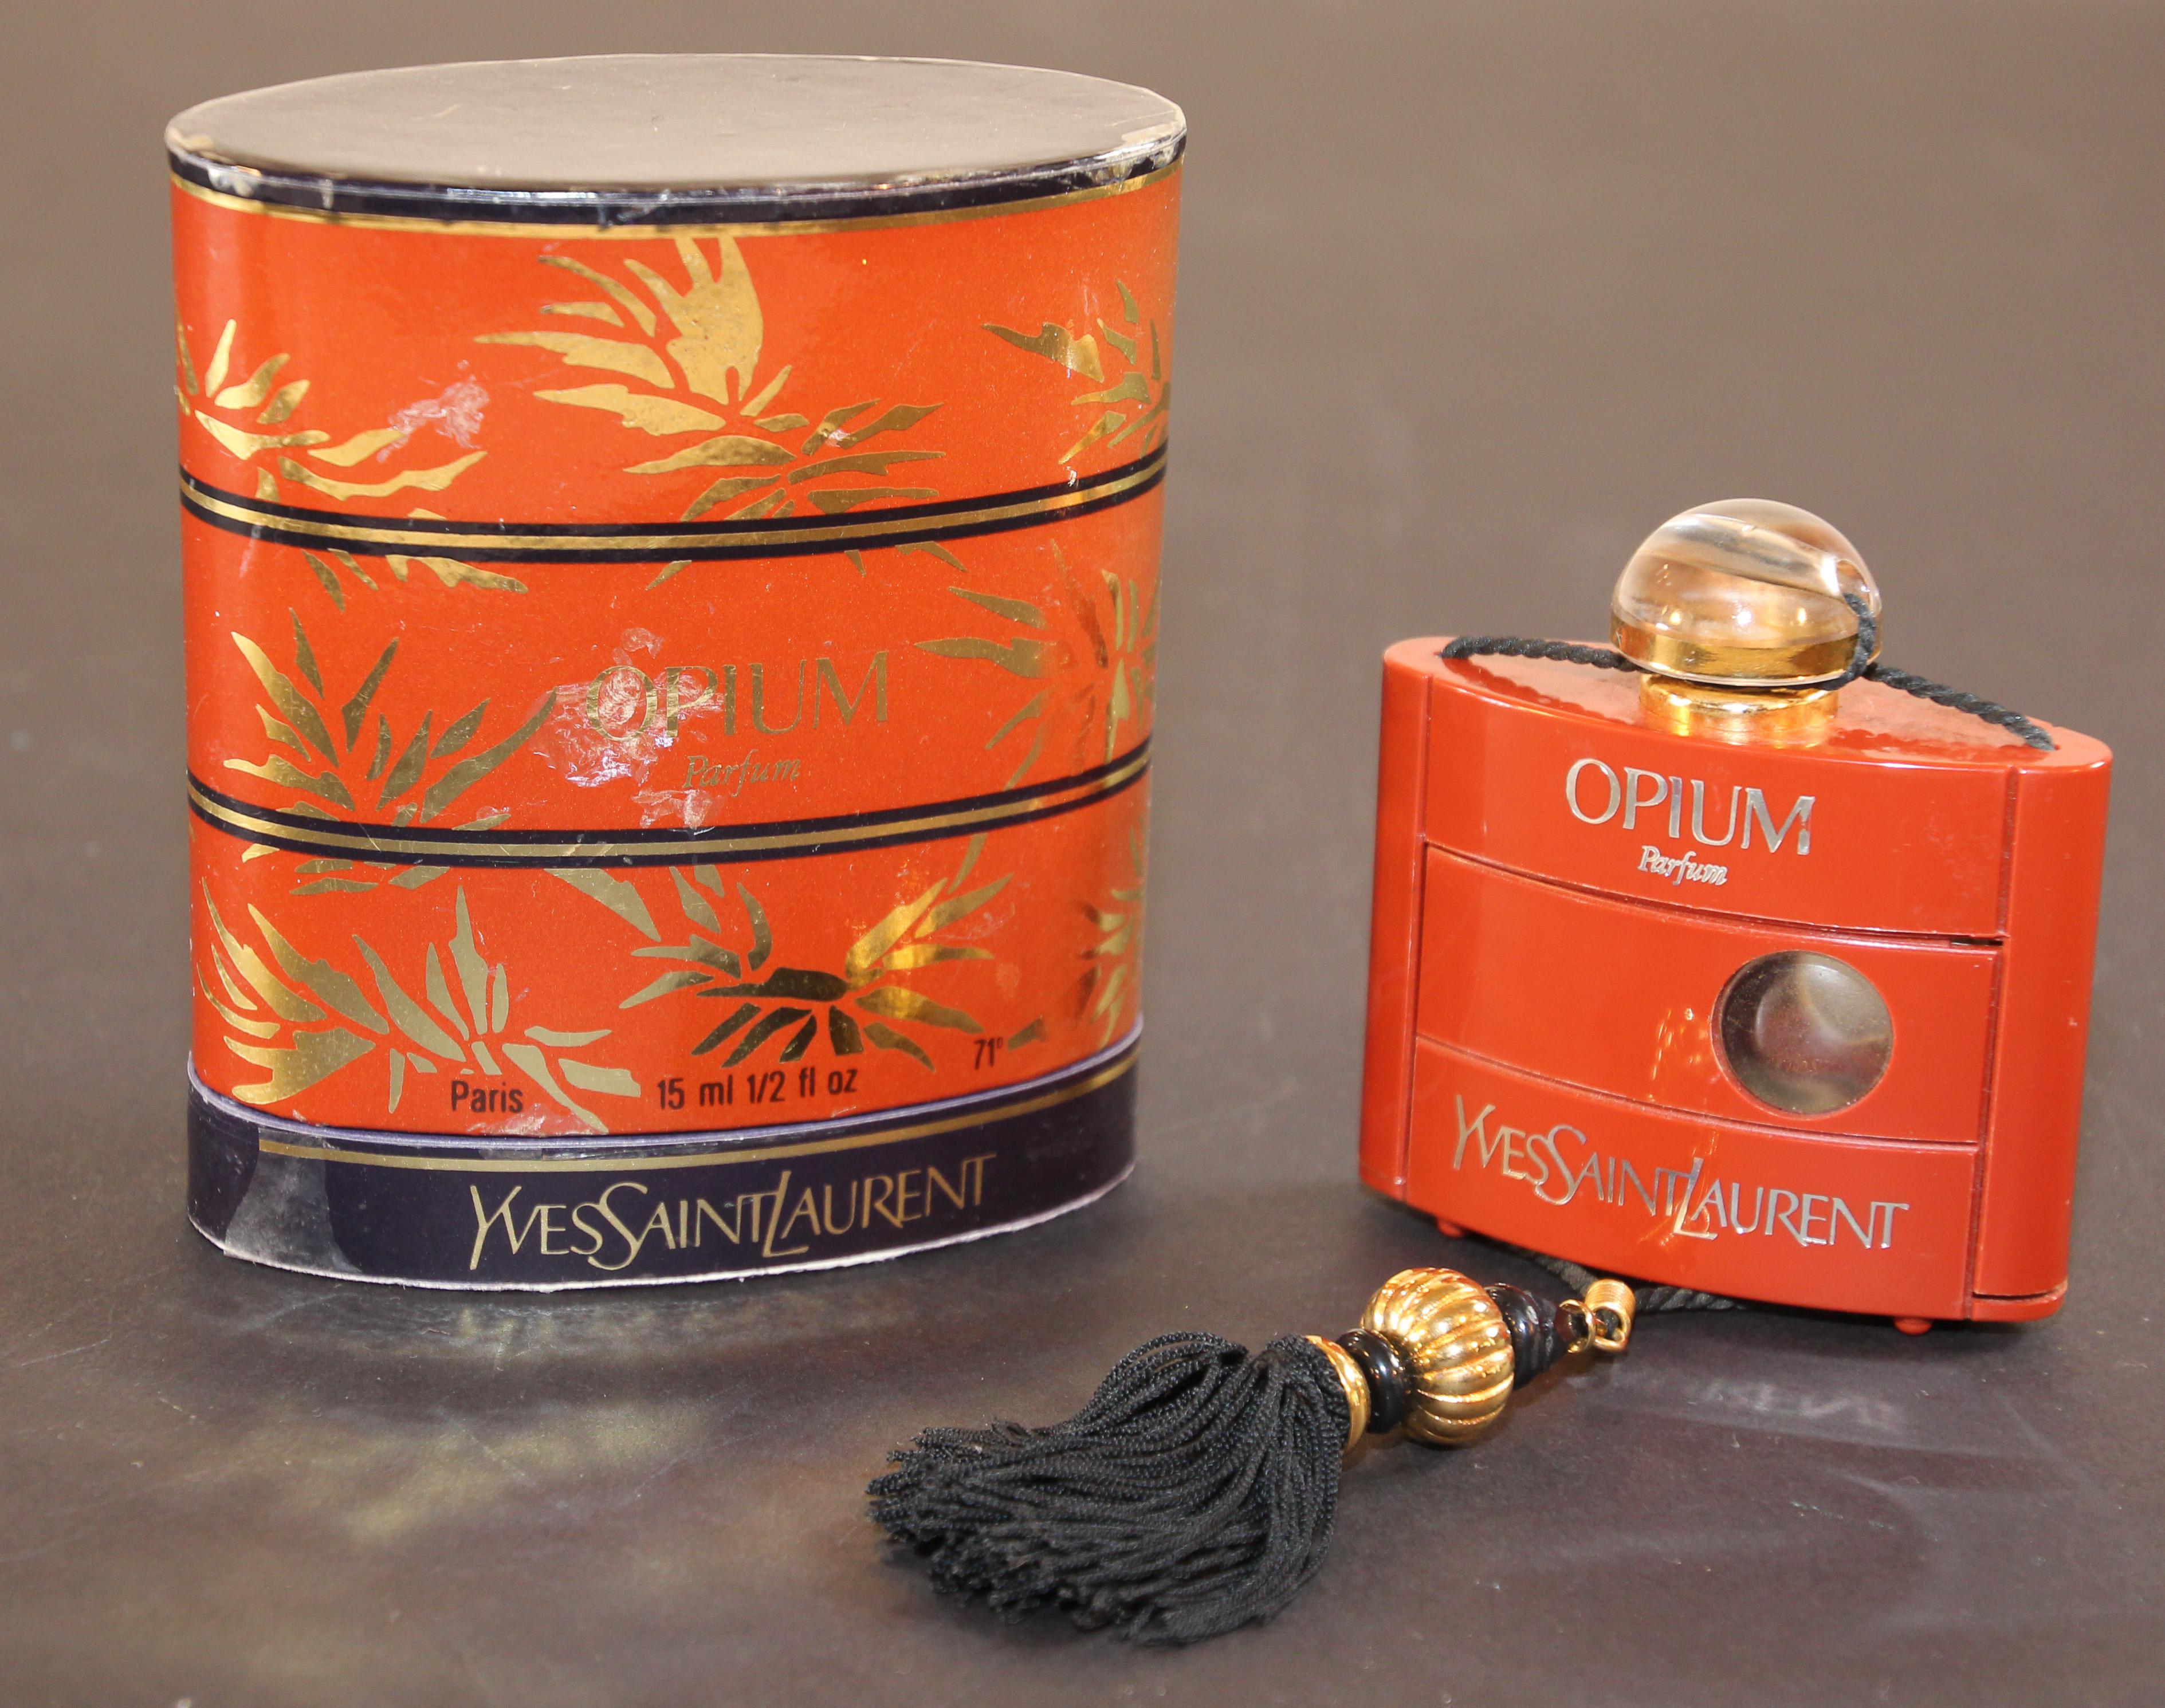 Vintage Yves Saint Laurent Opium Parfum hergestellt in Frankreich Collectional Flasche 1980'S
Dies ist Jahrgang, schwer zu finden, eingestellt, Sammler Parfüm Flasche : Yves Saint Laurent Opium Pure Parfüm .
Vintage Opium reines Parfüm 15 ml - 1/2